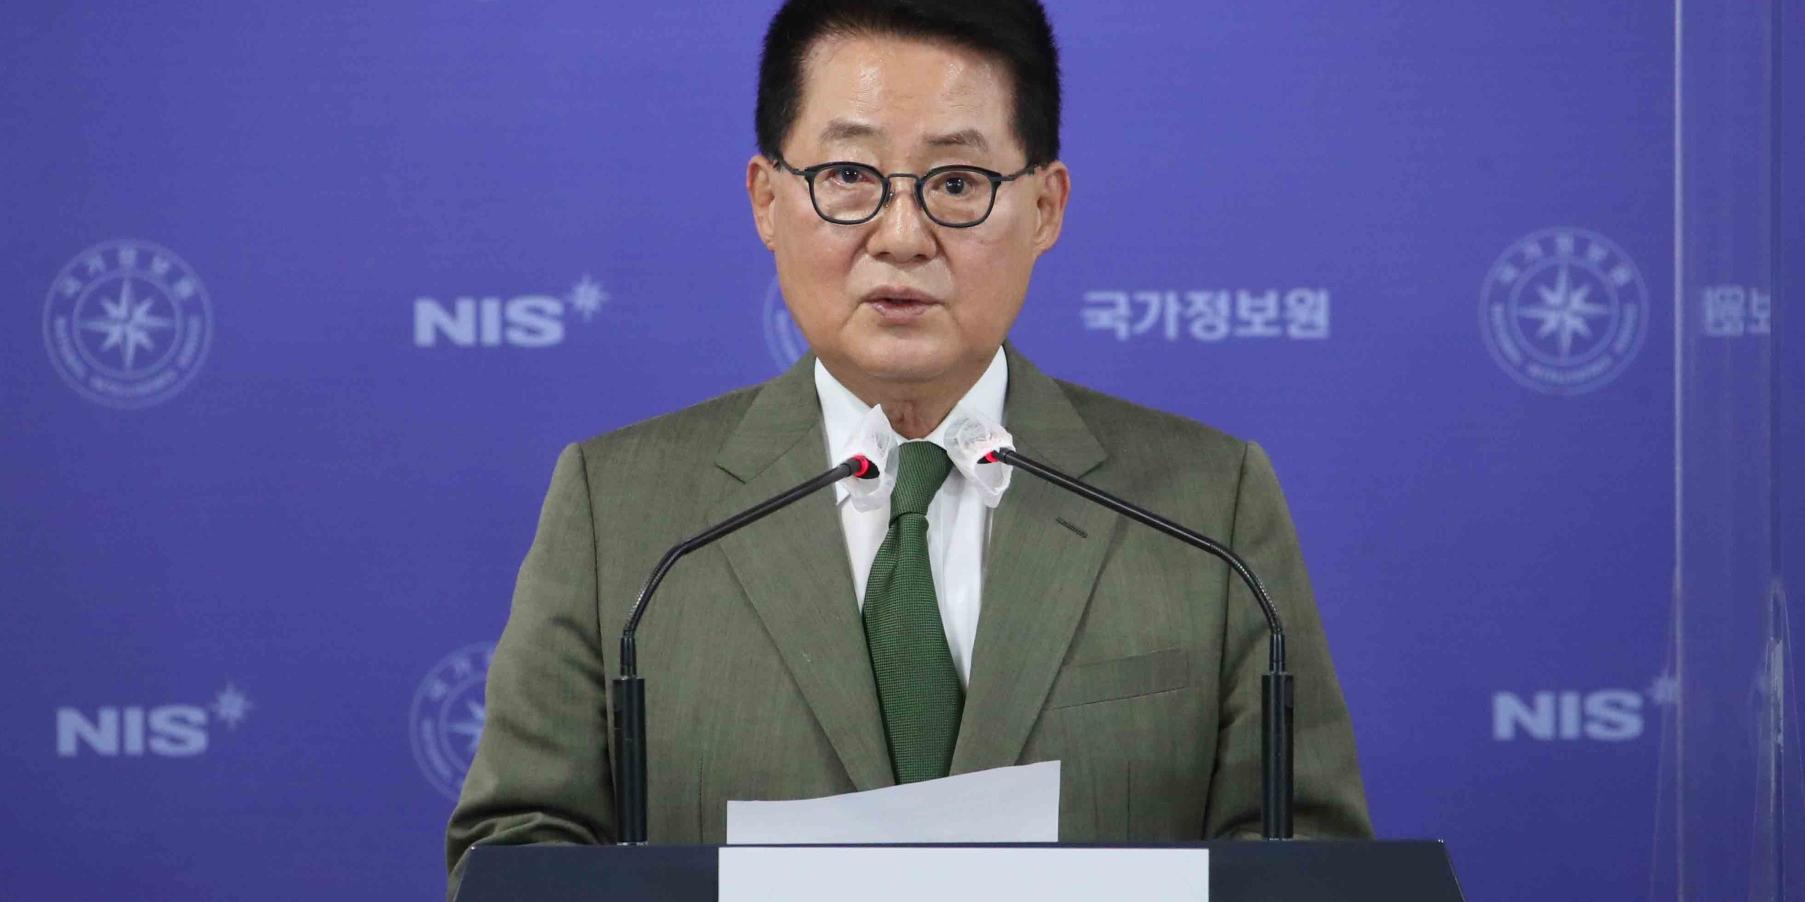 박지원 민주당 복당 선언, “이재명 민심과 당심 듣고 당권도전 결정해야”